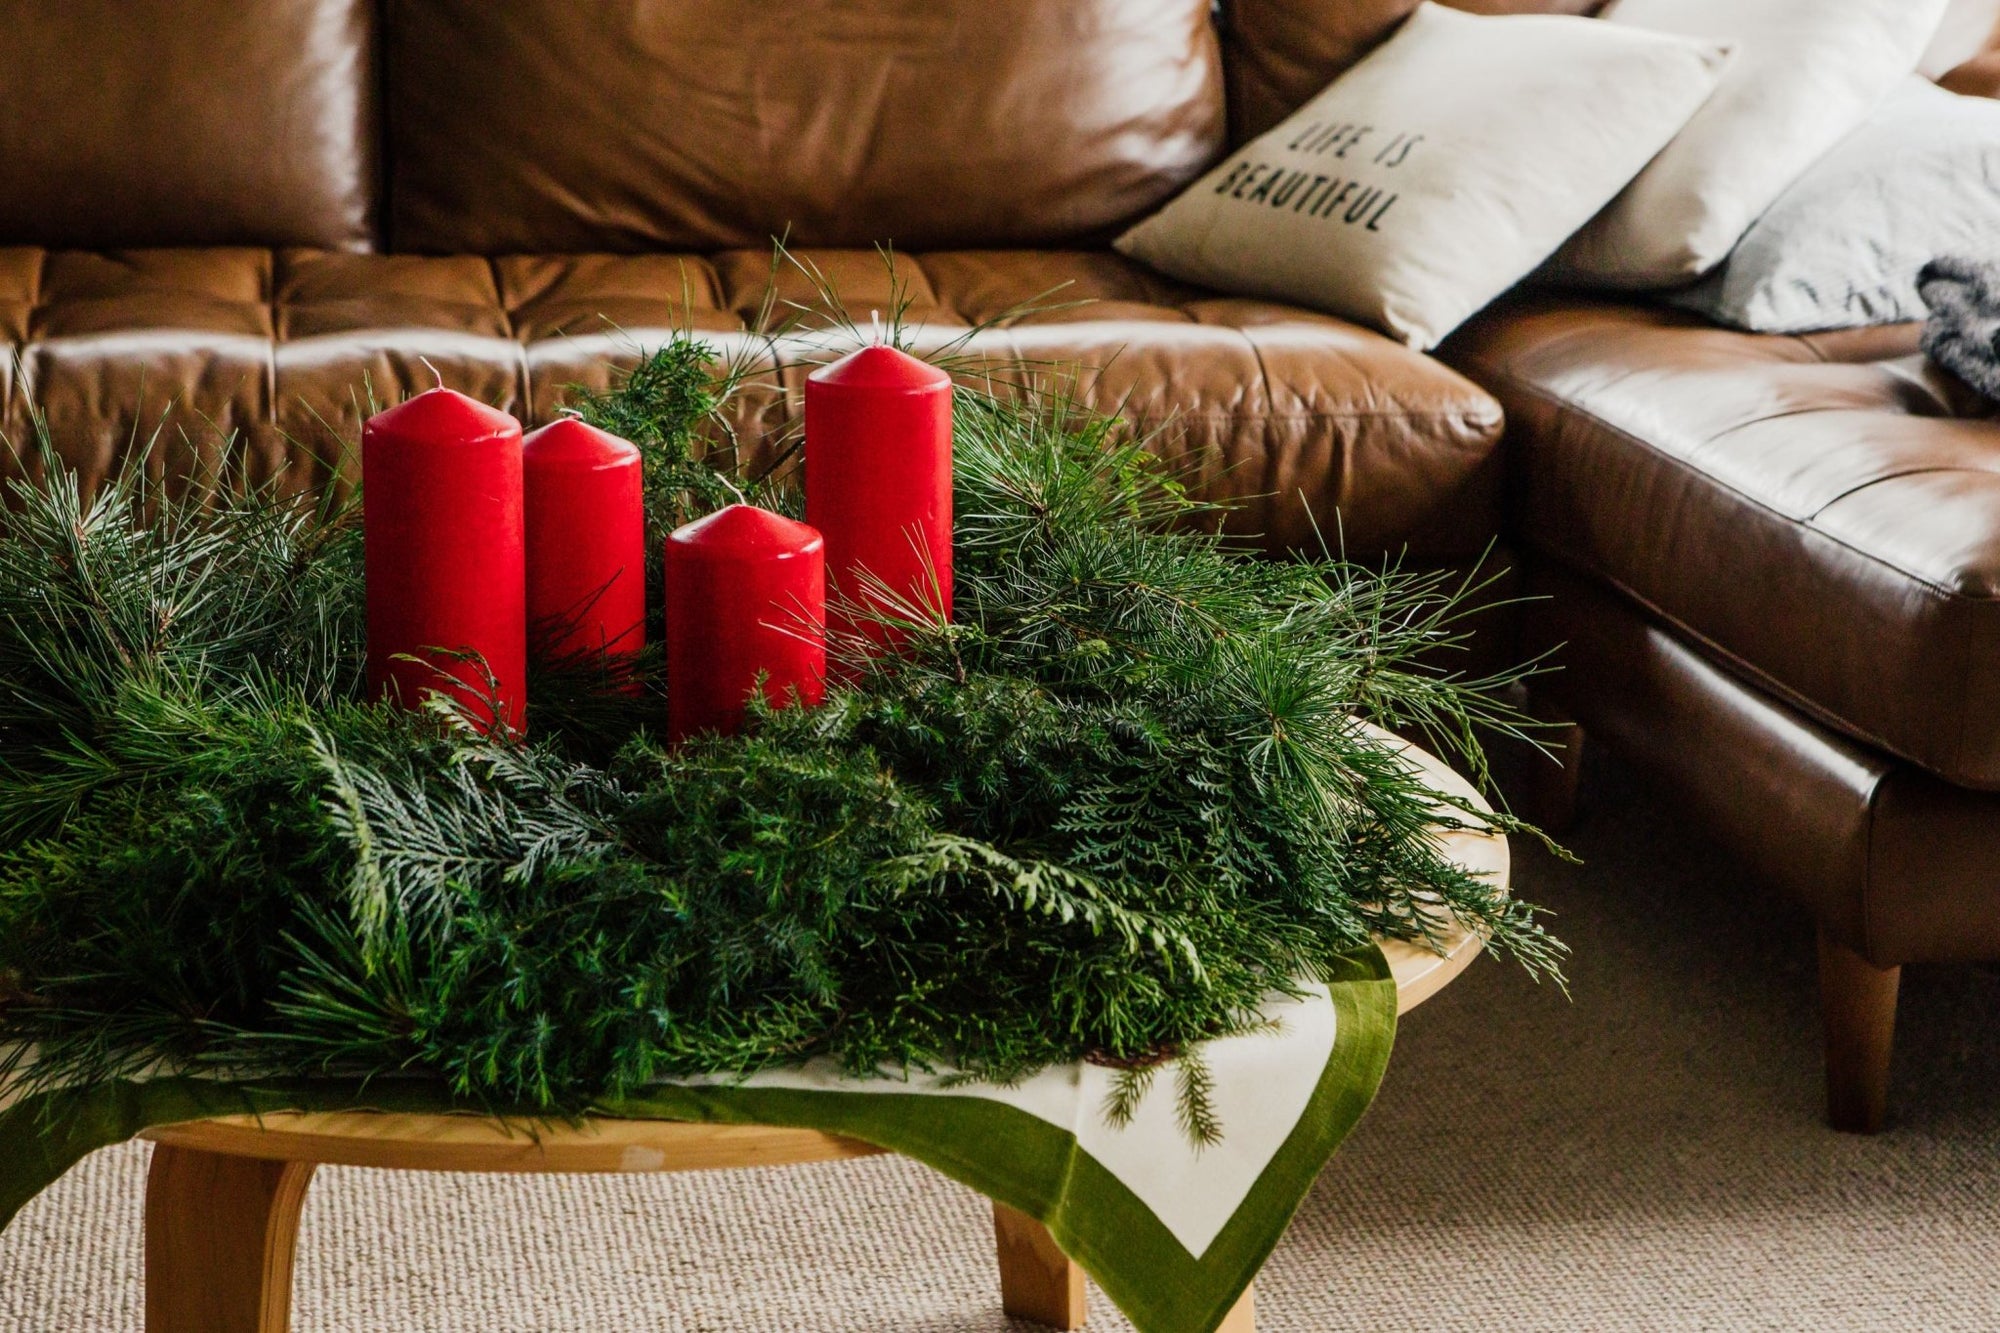 How To: Make an Advent Wreath - Gewürzhaus